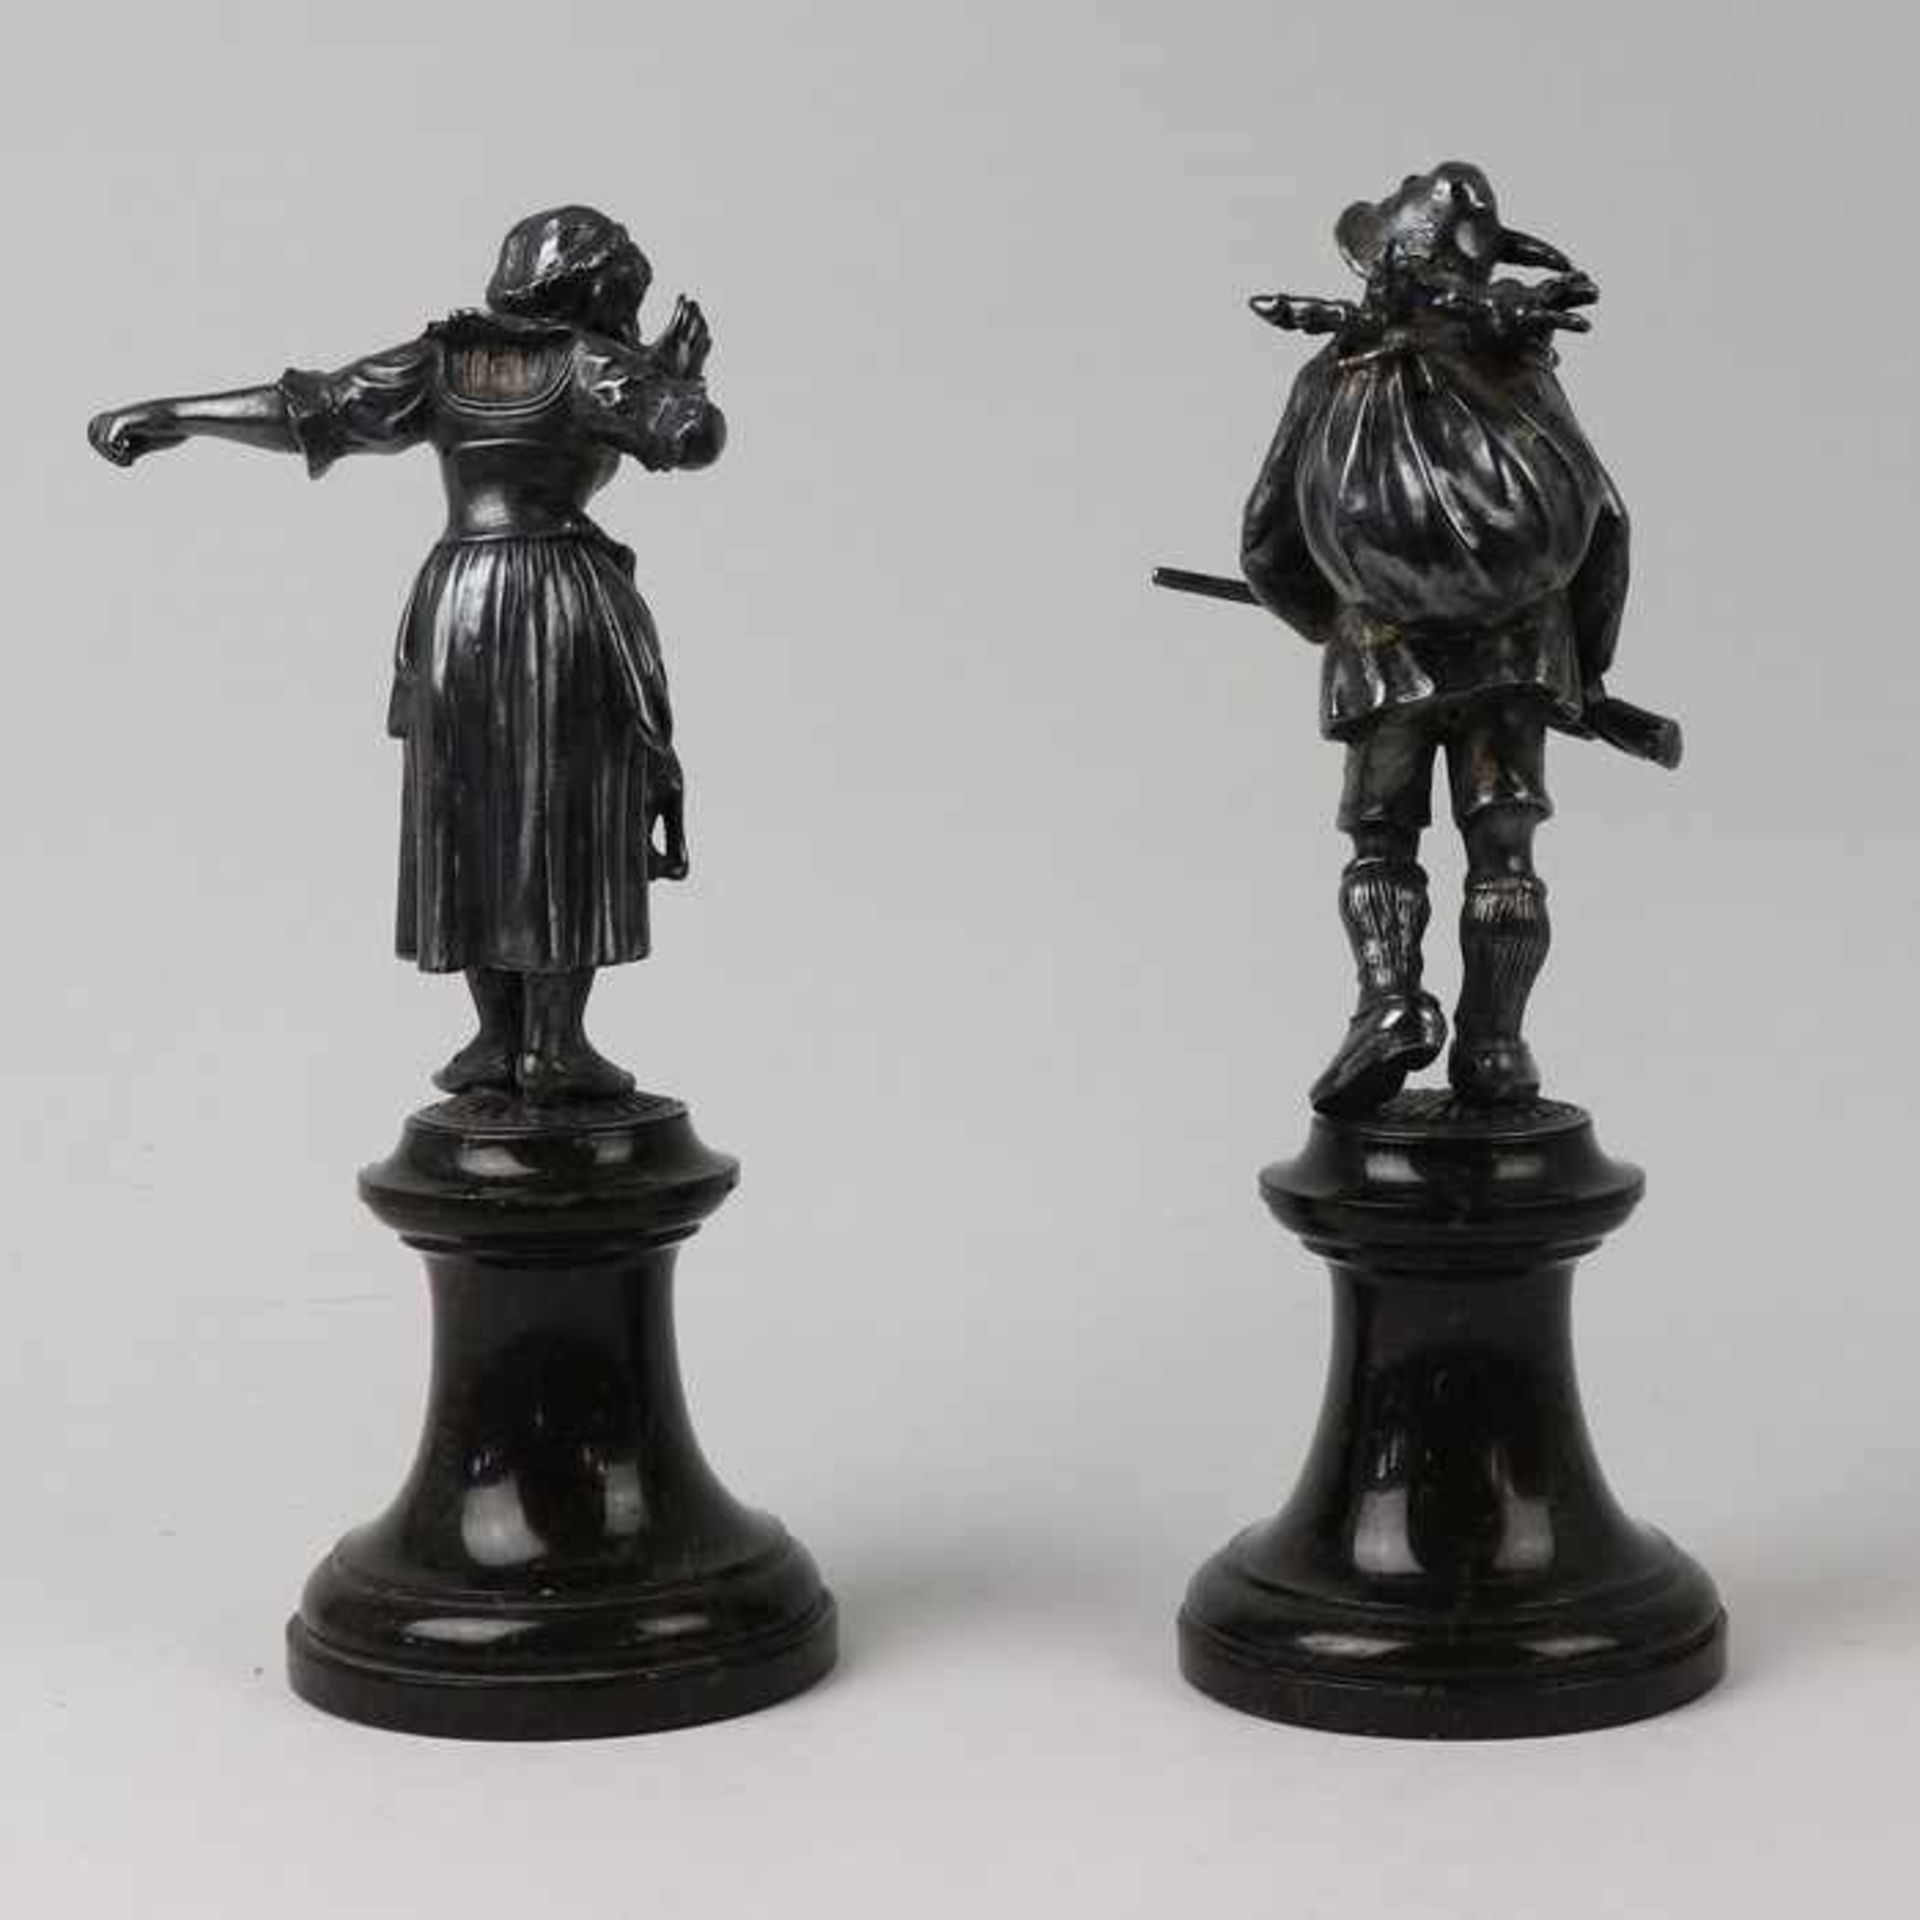 Figurenpaarum 1910/20, Metall, versi., 2 vollplastische Figuren, ein Jäger m. Beute ein Gewehr in - Bild 5 aus 6